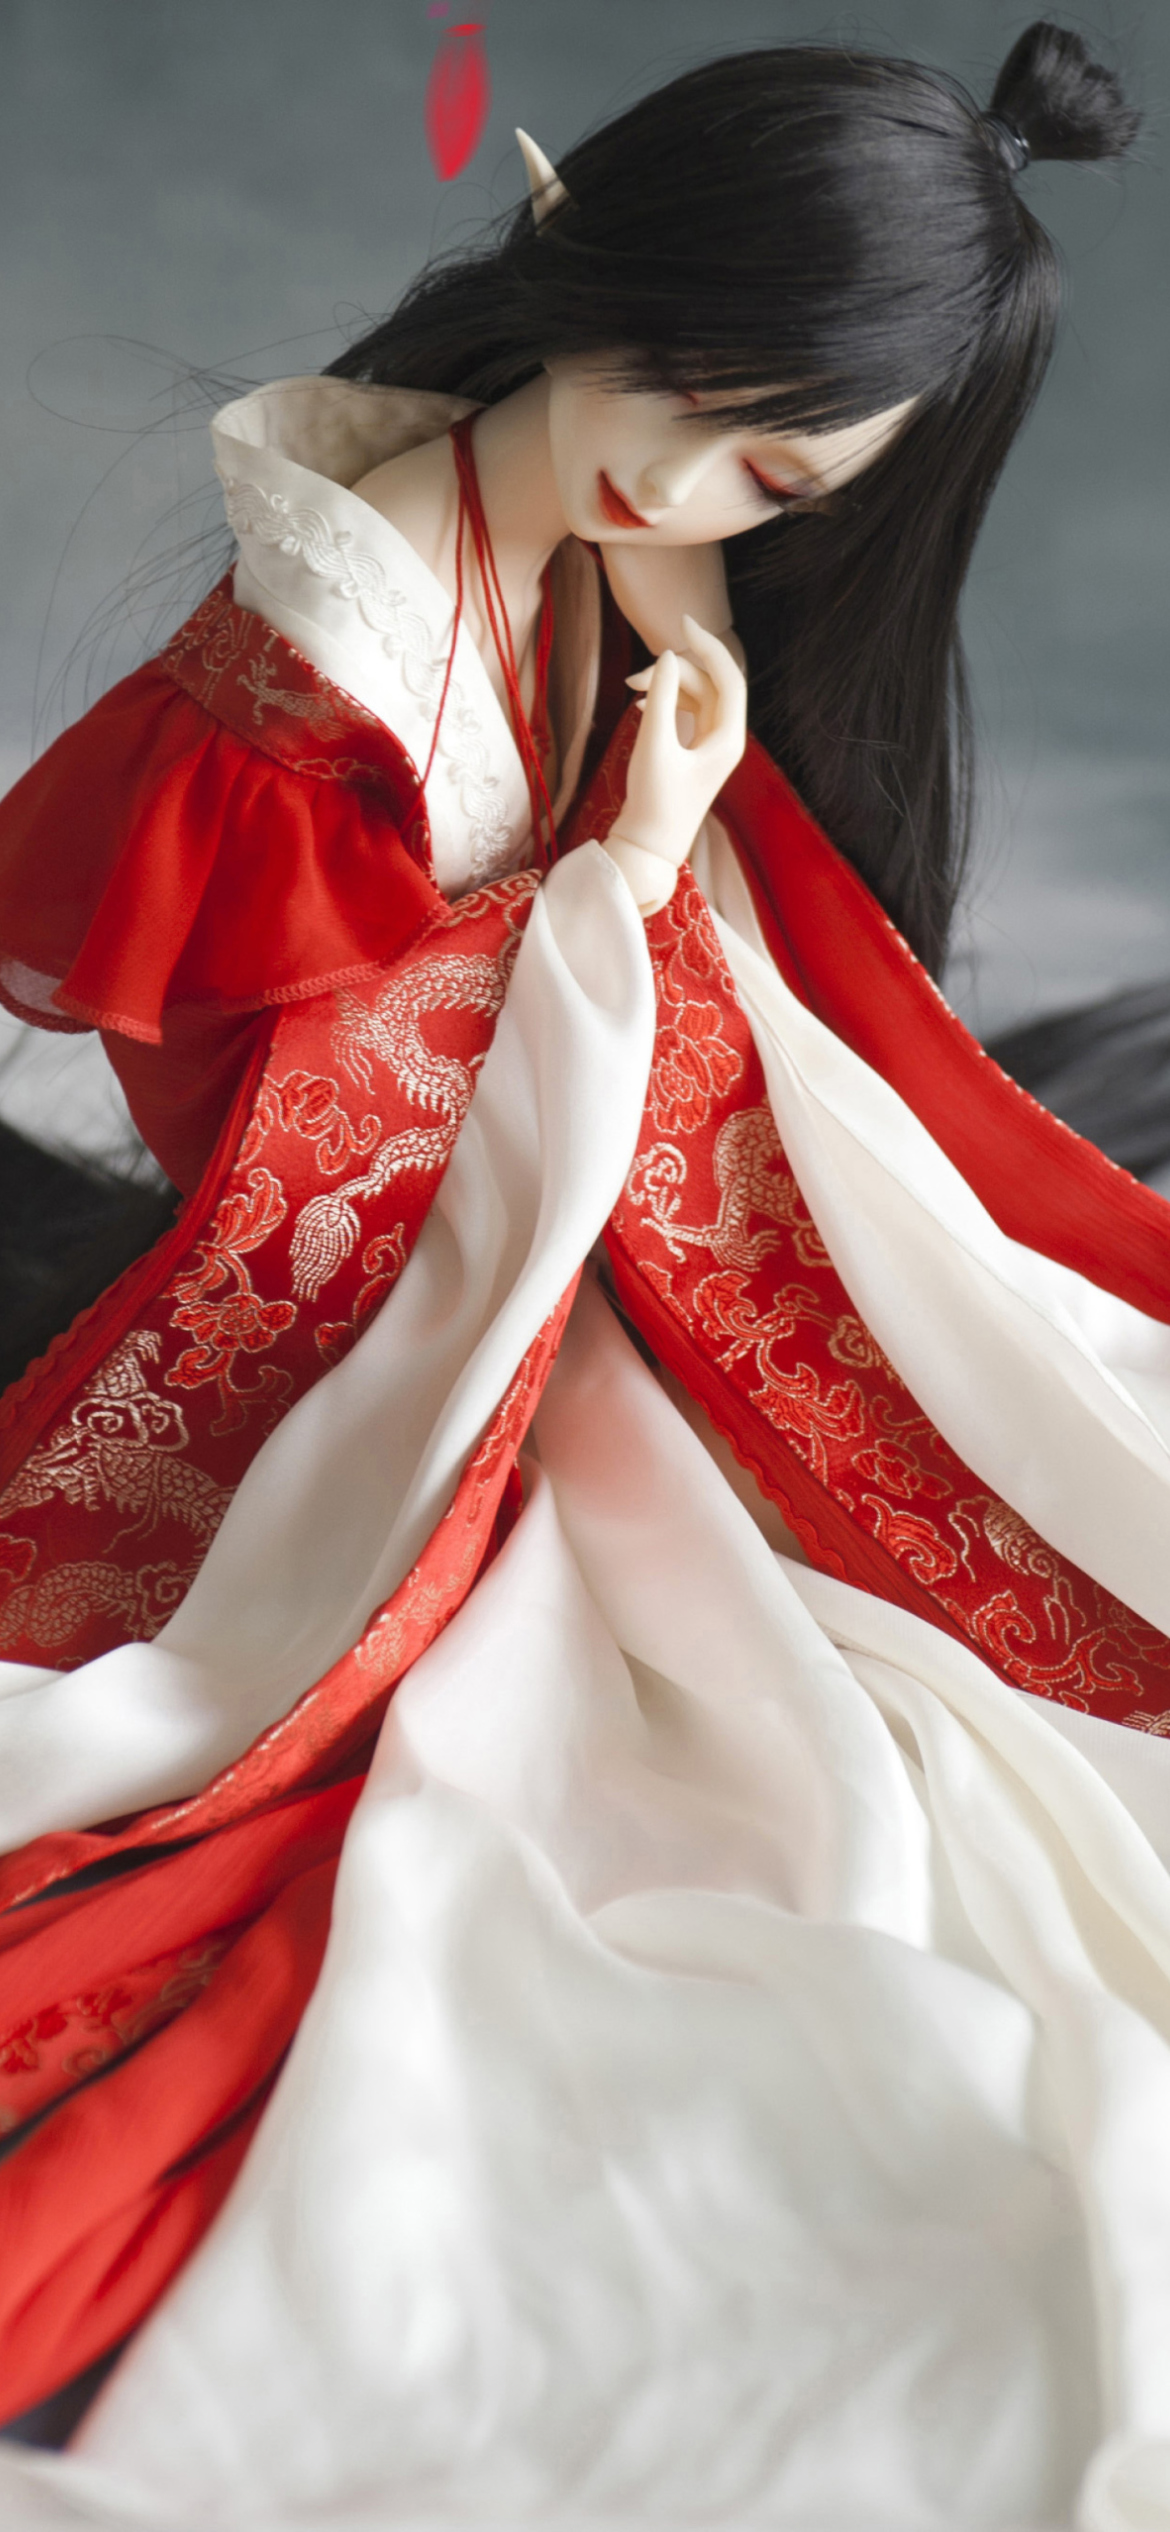 Обои Beautiful Doll In Japanese Kimono 1170x2532